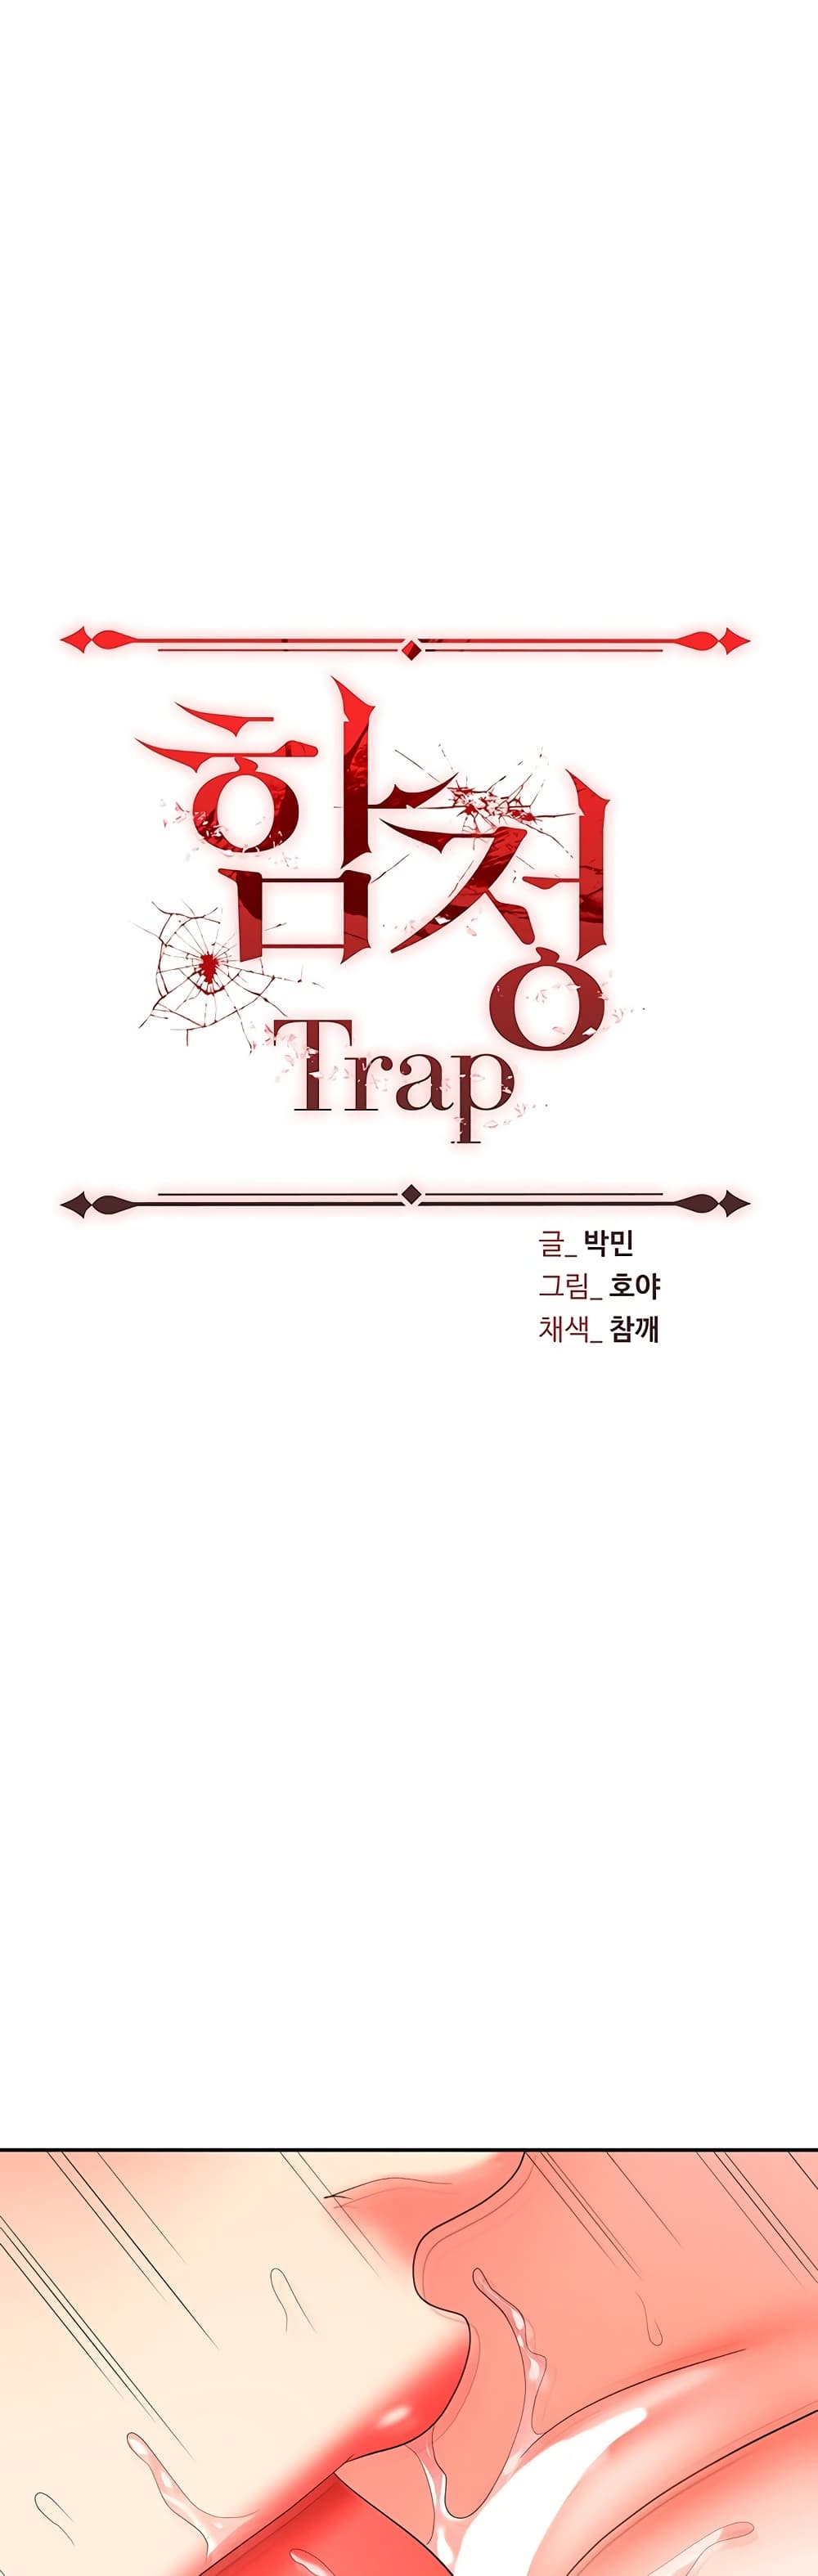 Trap 37-37